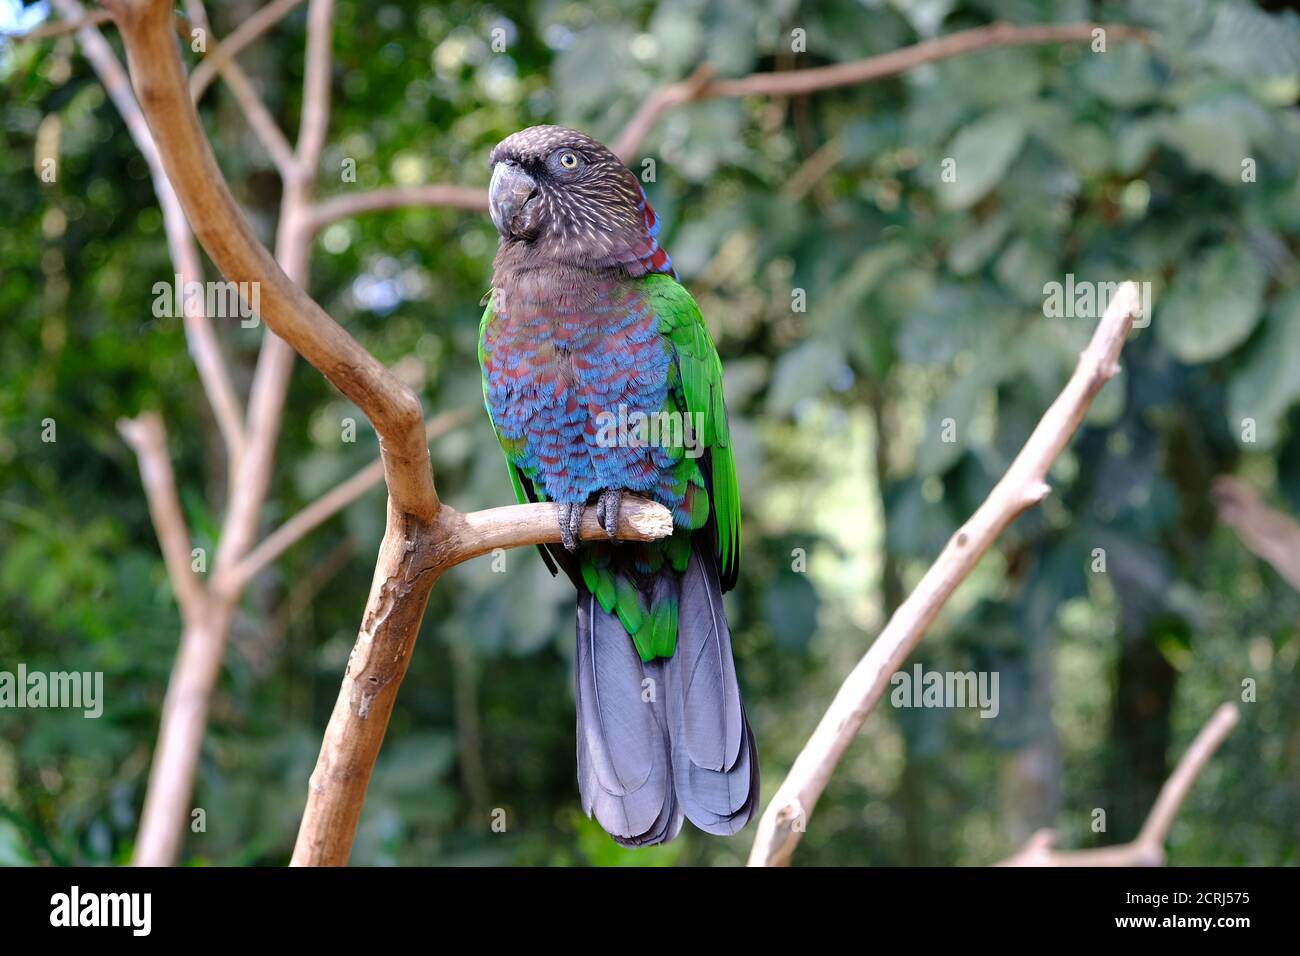 Brésil Foz do Iguaçu - Zoo - Parque das Aves Perroquet adulte assis dans un arbre Banque D'Images